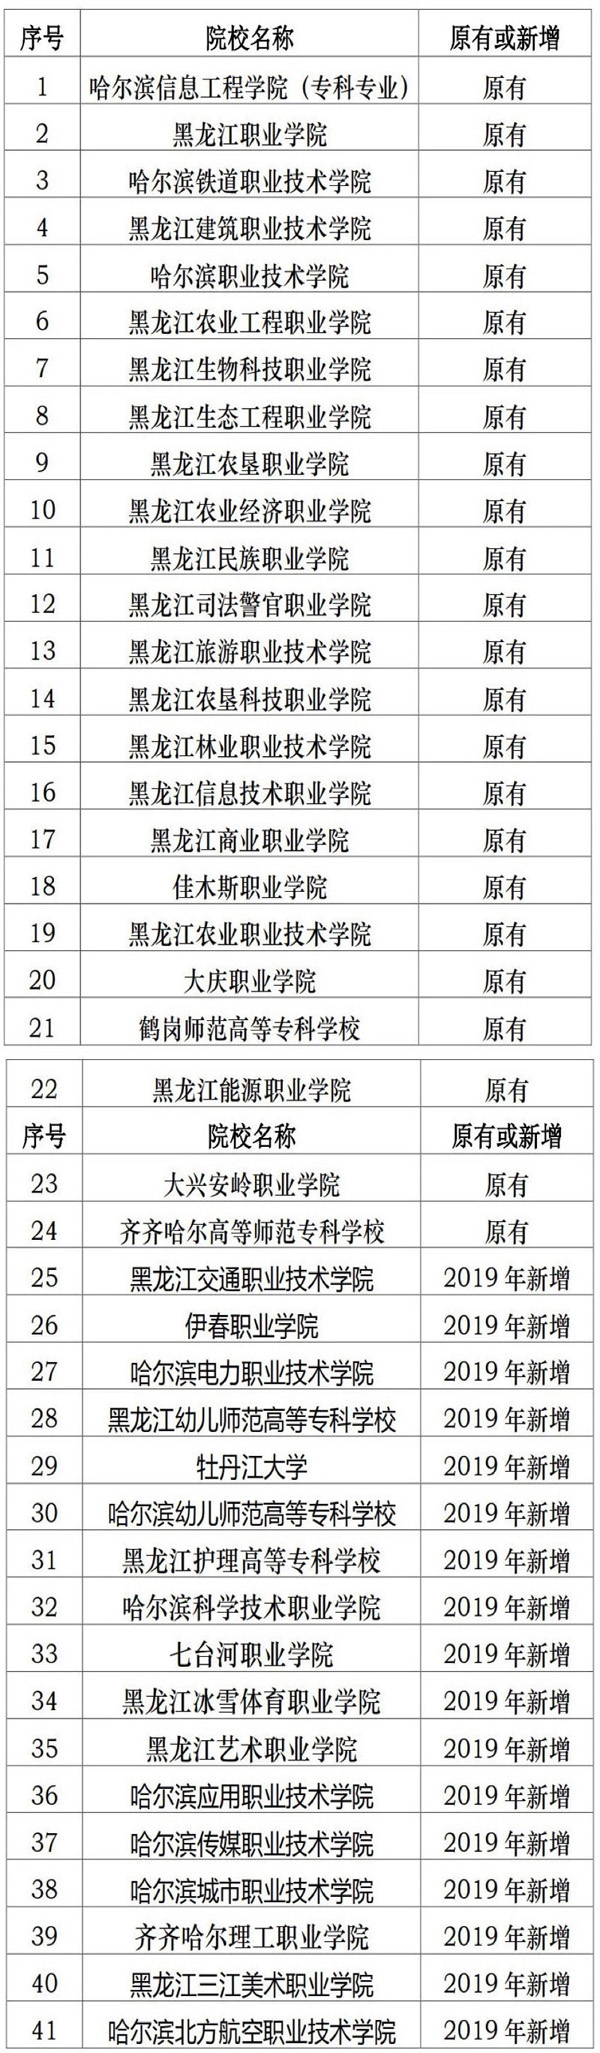 黑龙江 - 2019年41所高职院校单独招生 1所院校暂停单招